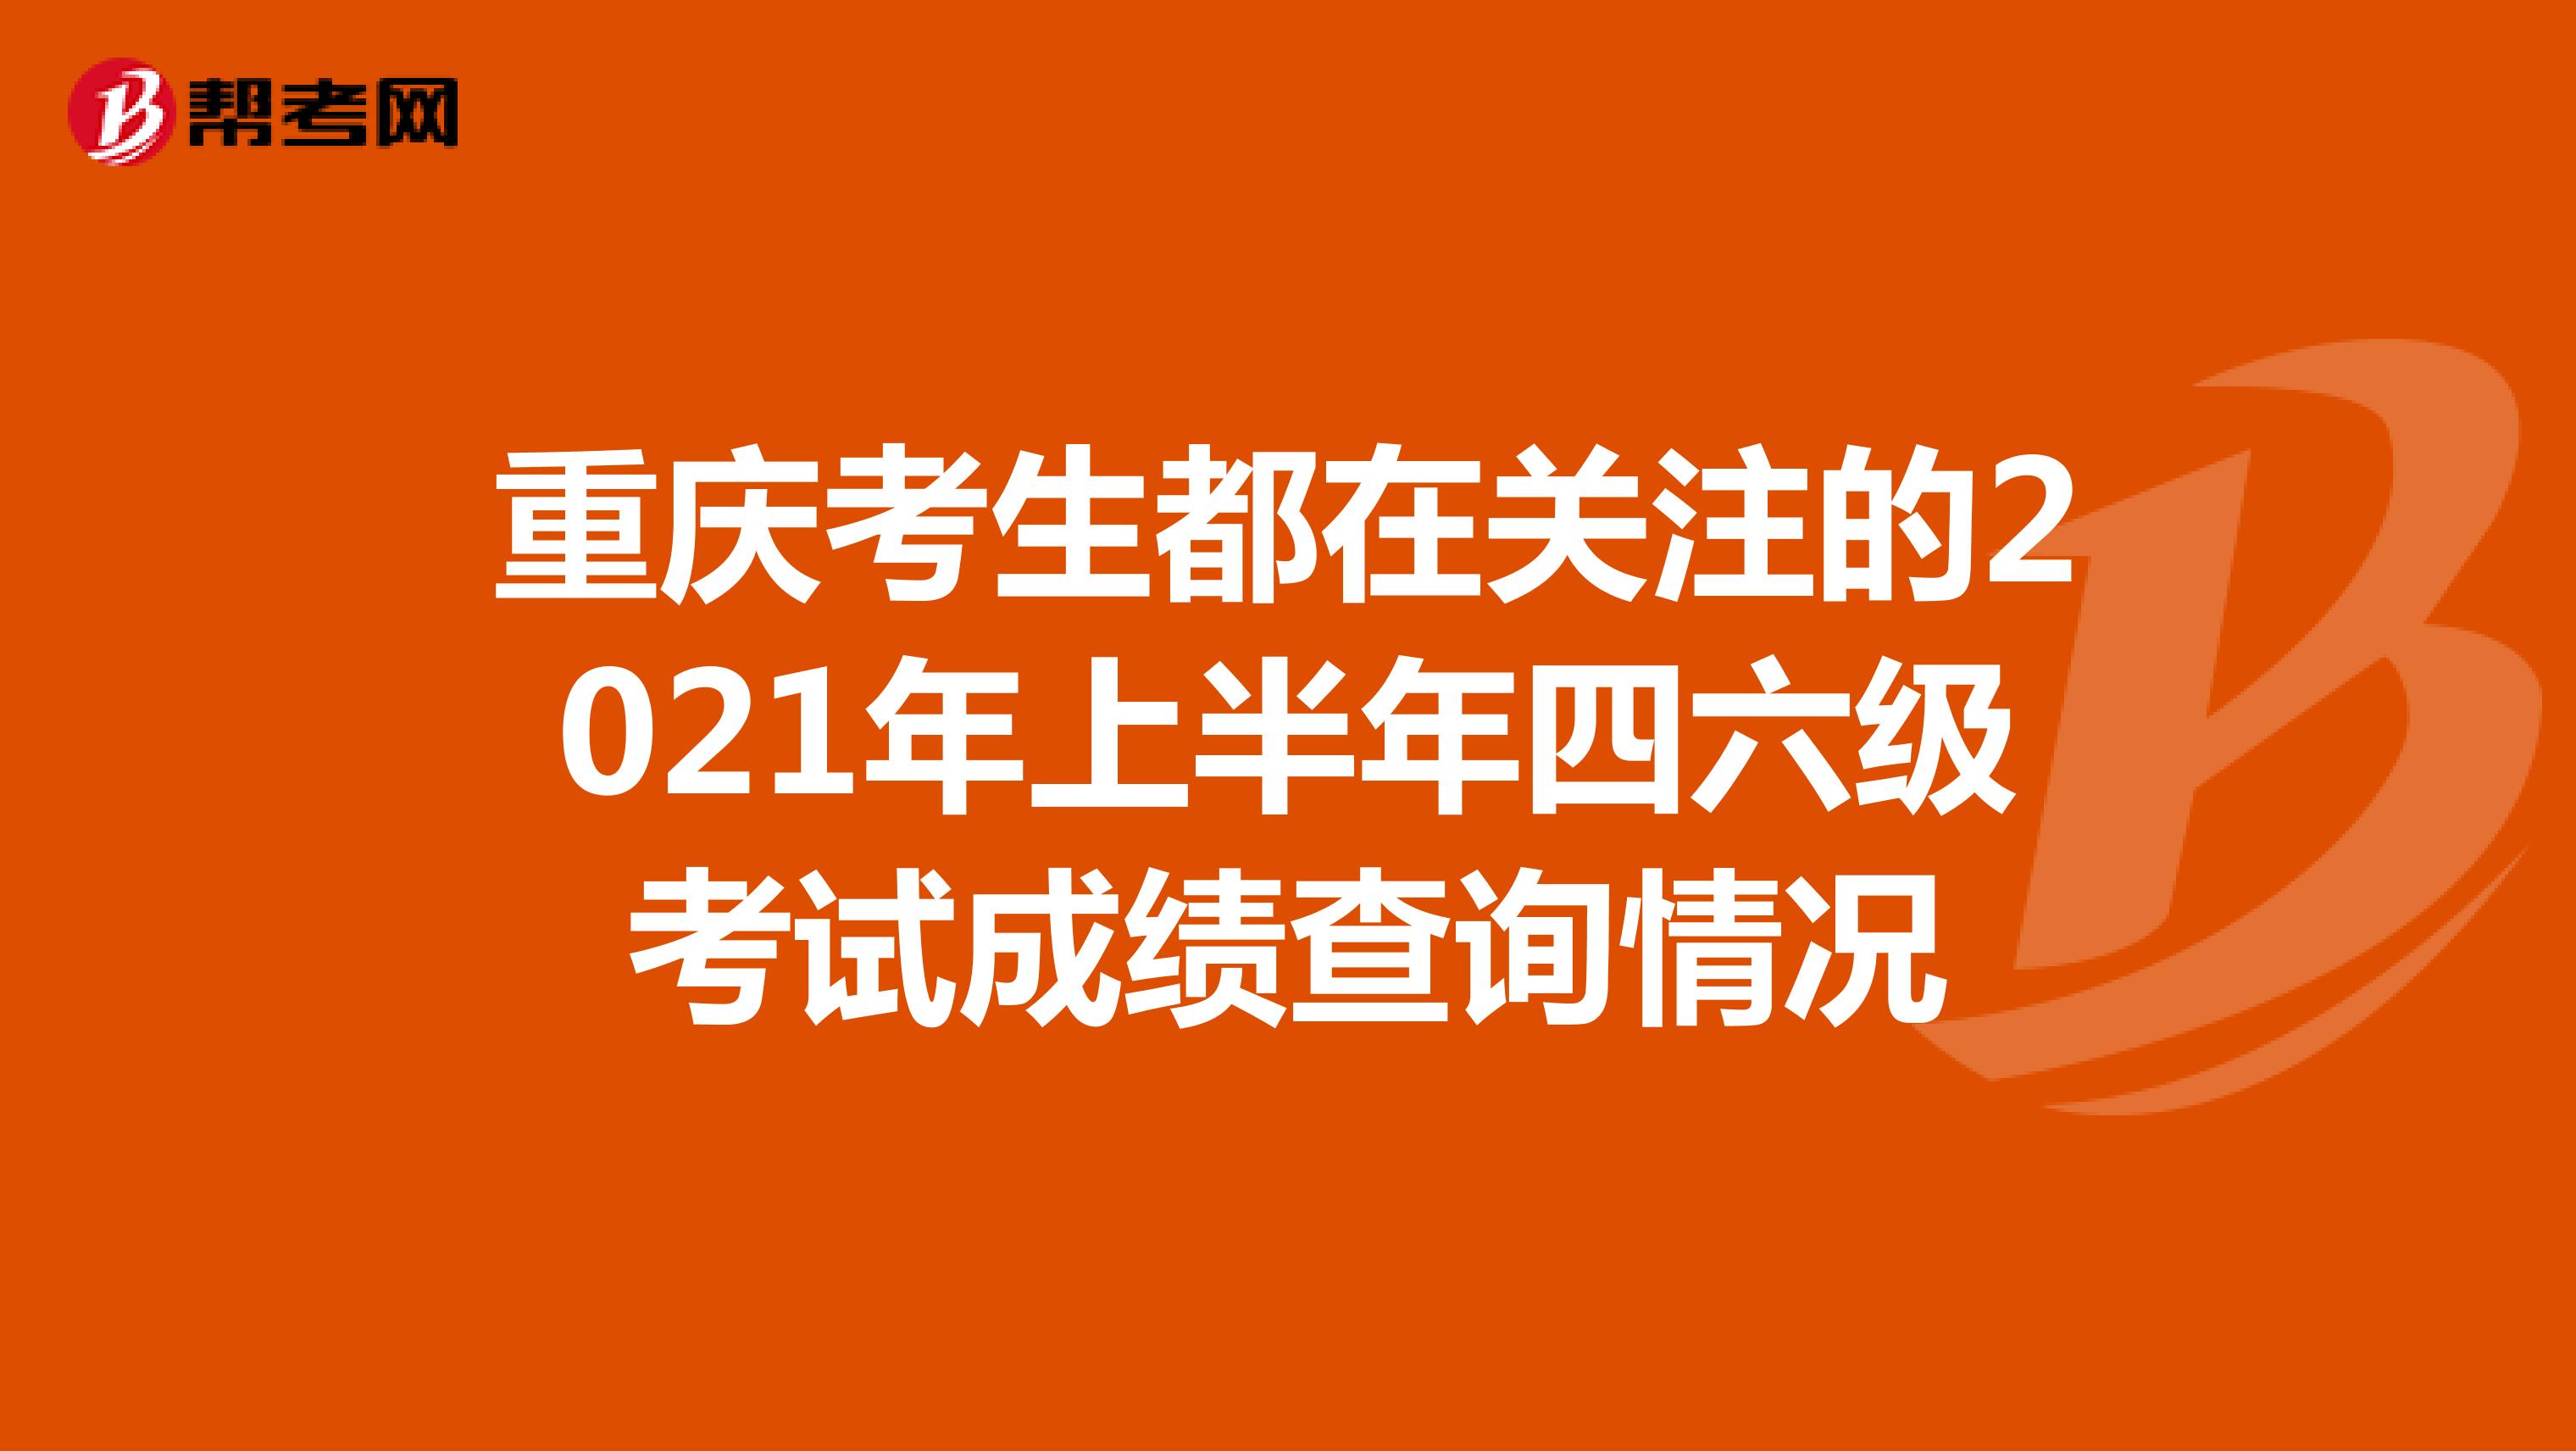 重庆考生都在关注的2021年上半年四六级考试成绩查询情况